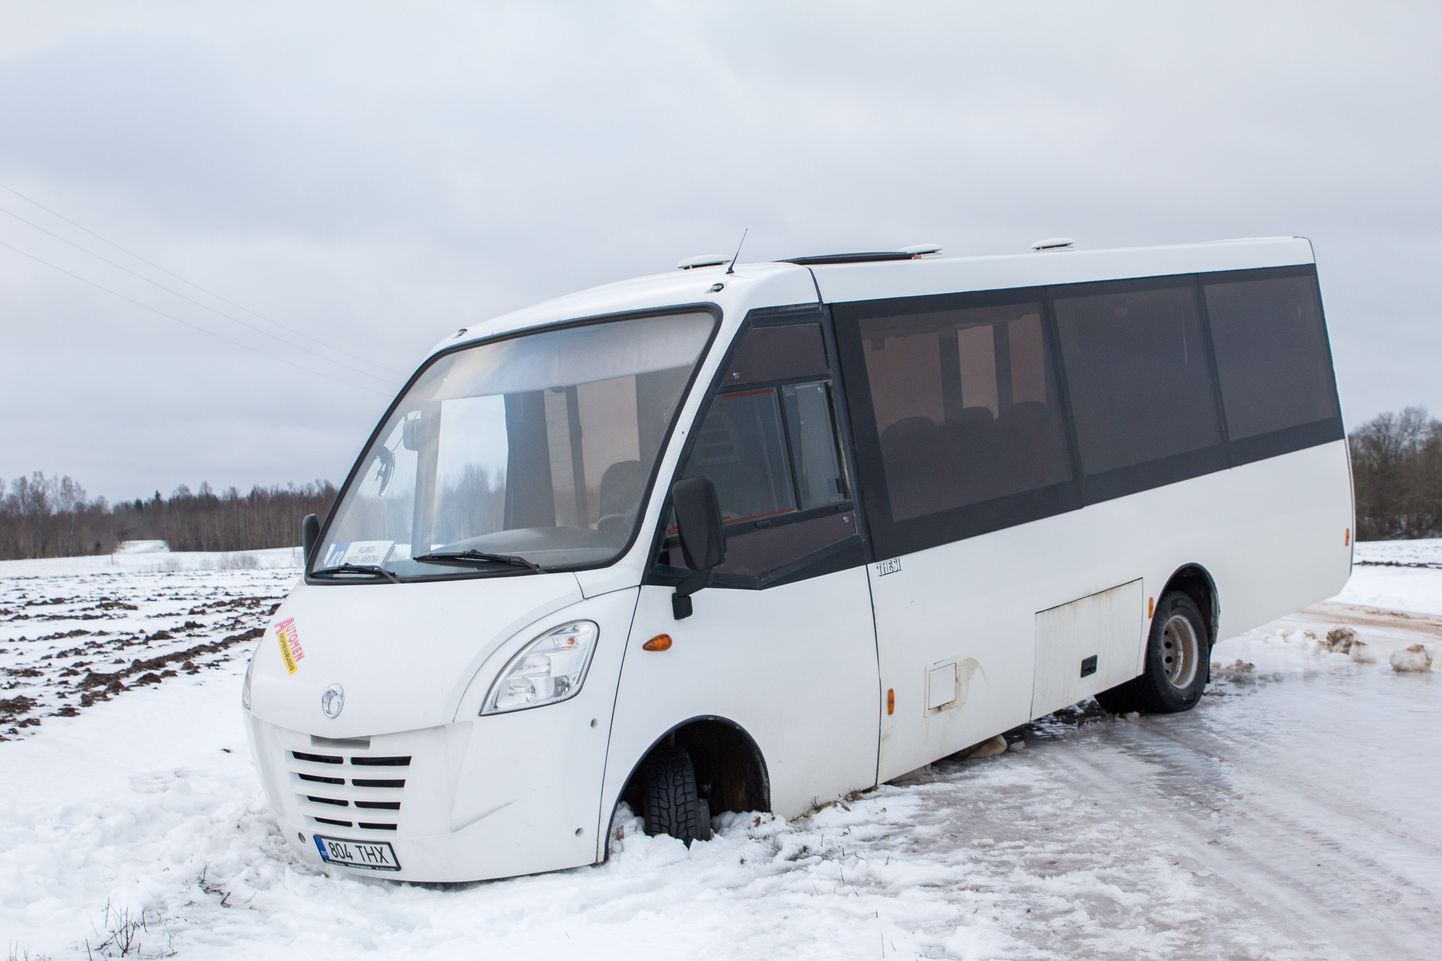 Viimastel nädalatel on nii mõnigi buss jäiselt teelt kraavi sõitnud, kuid naelrehve bussidel Eestis peaaegu ei kasutata.